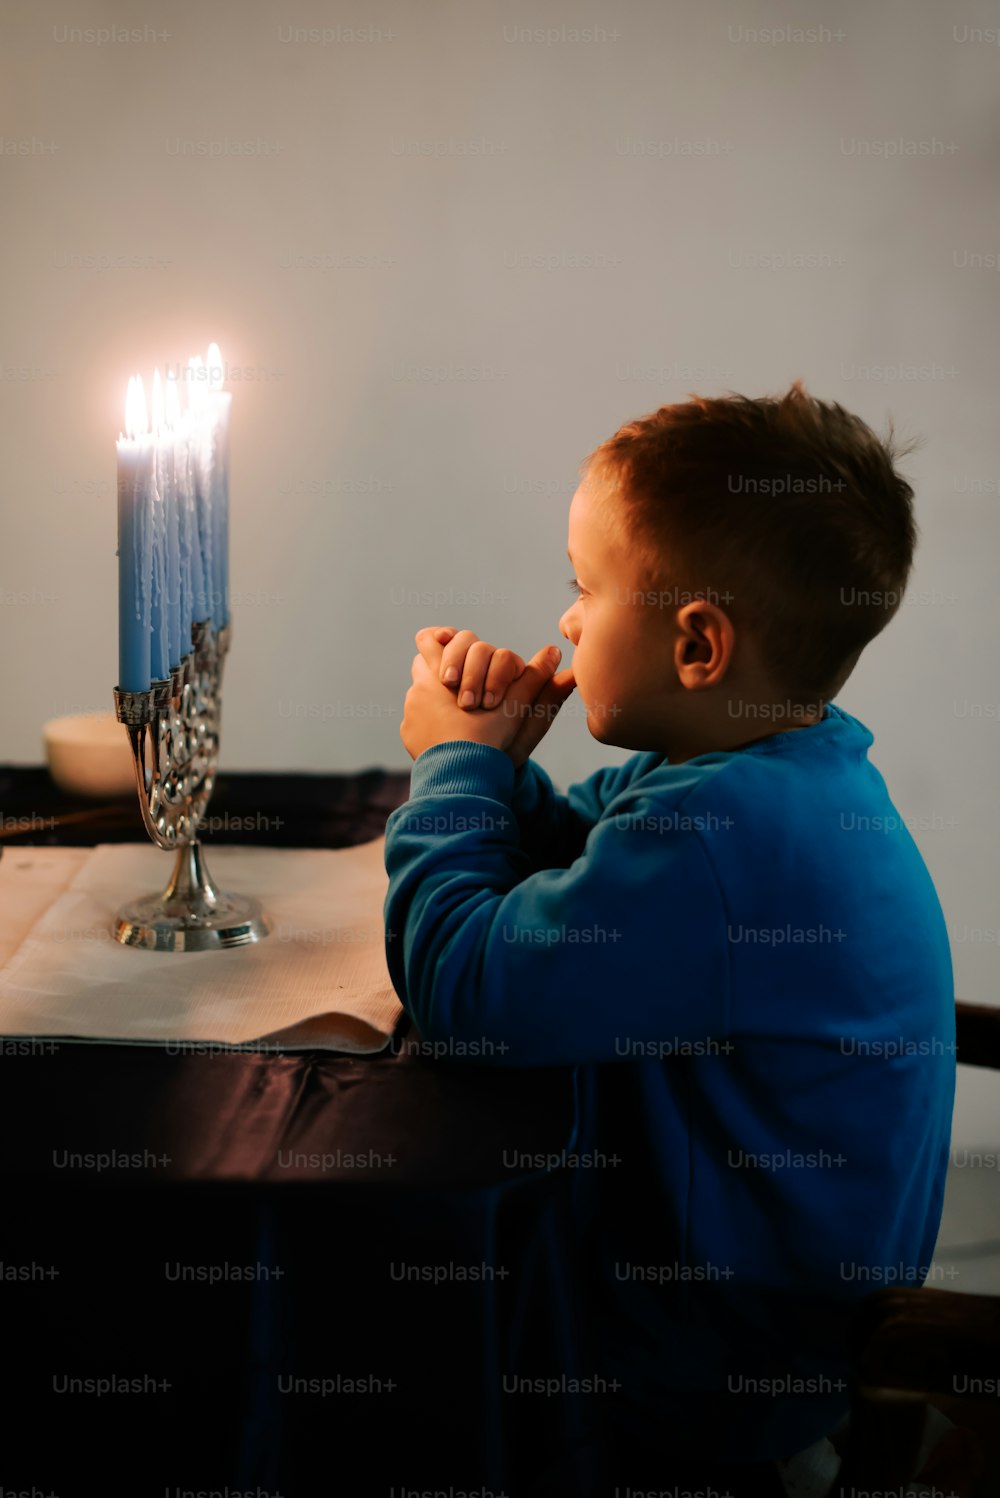 촛불이 켜진 테이블에 앉아 있는 어린 소년